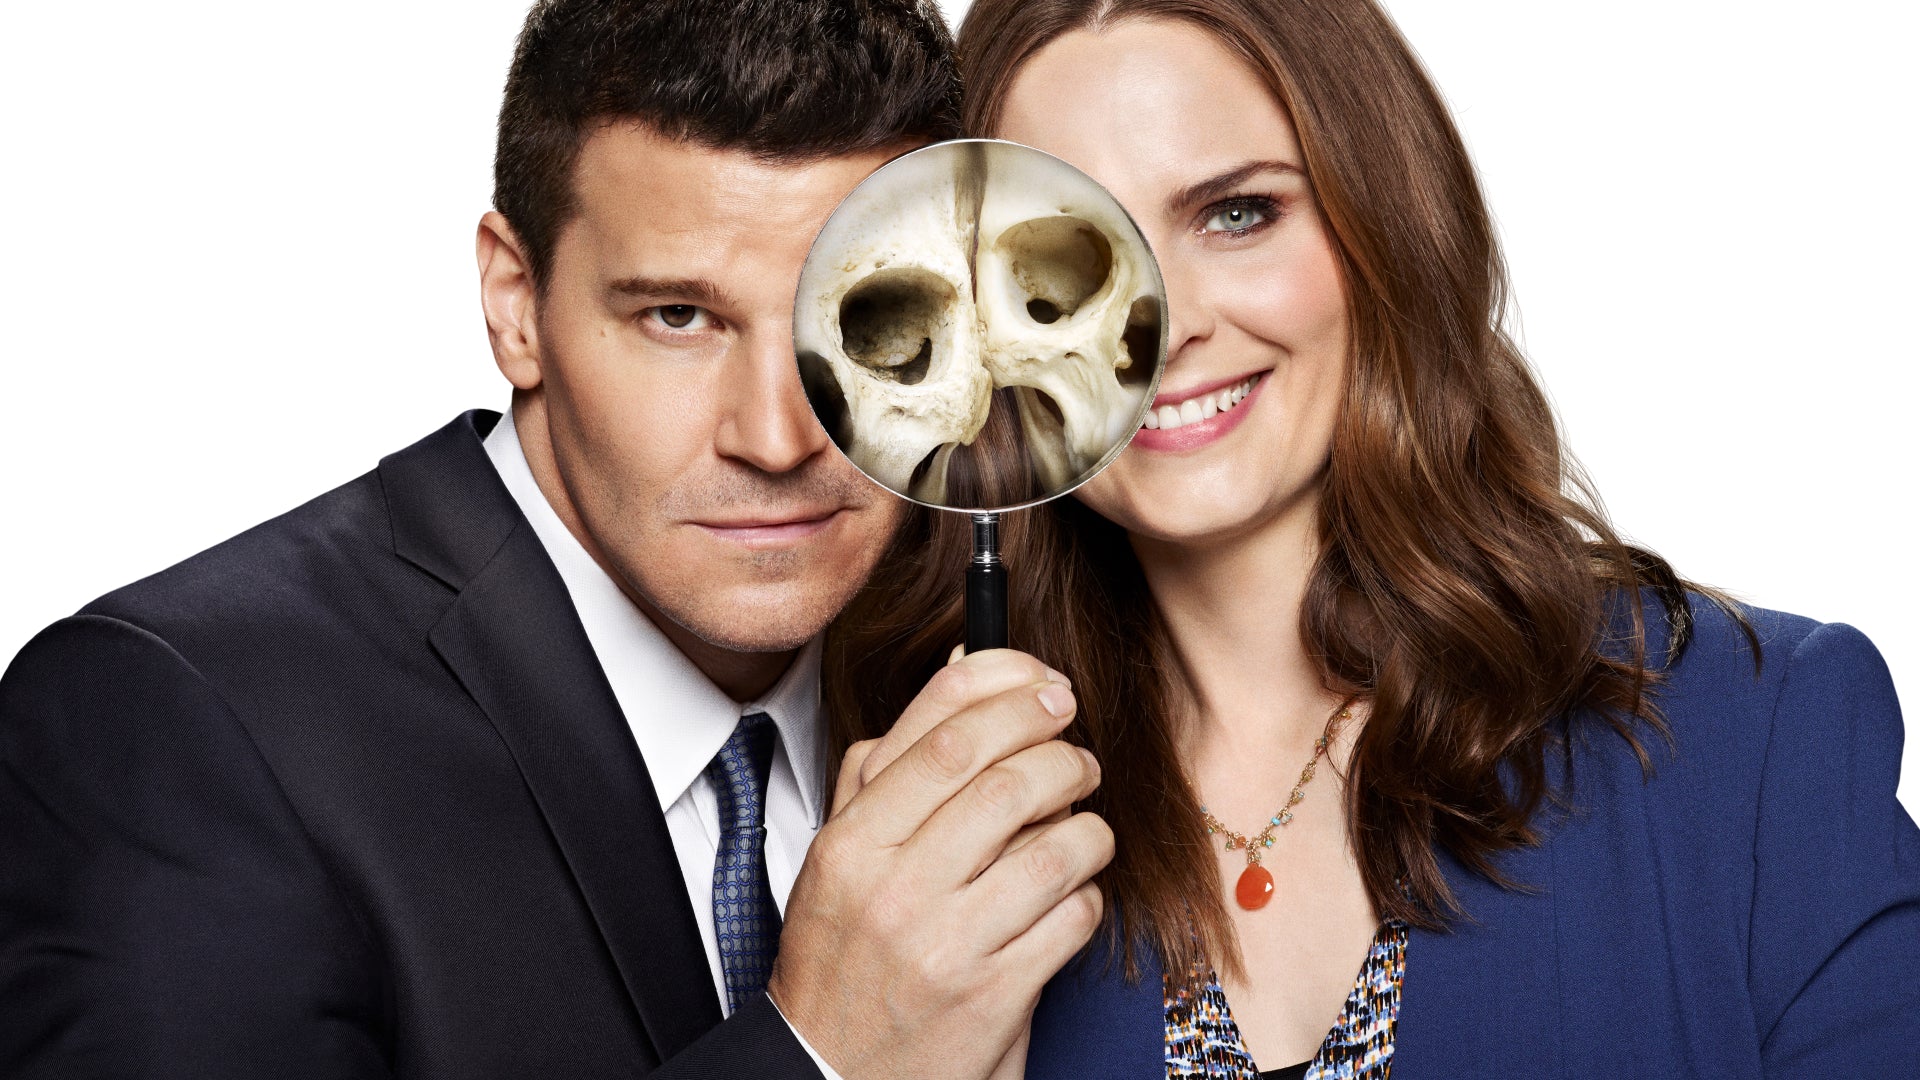 Bones: The Complete Series - Seasons 1-12